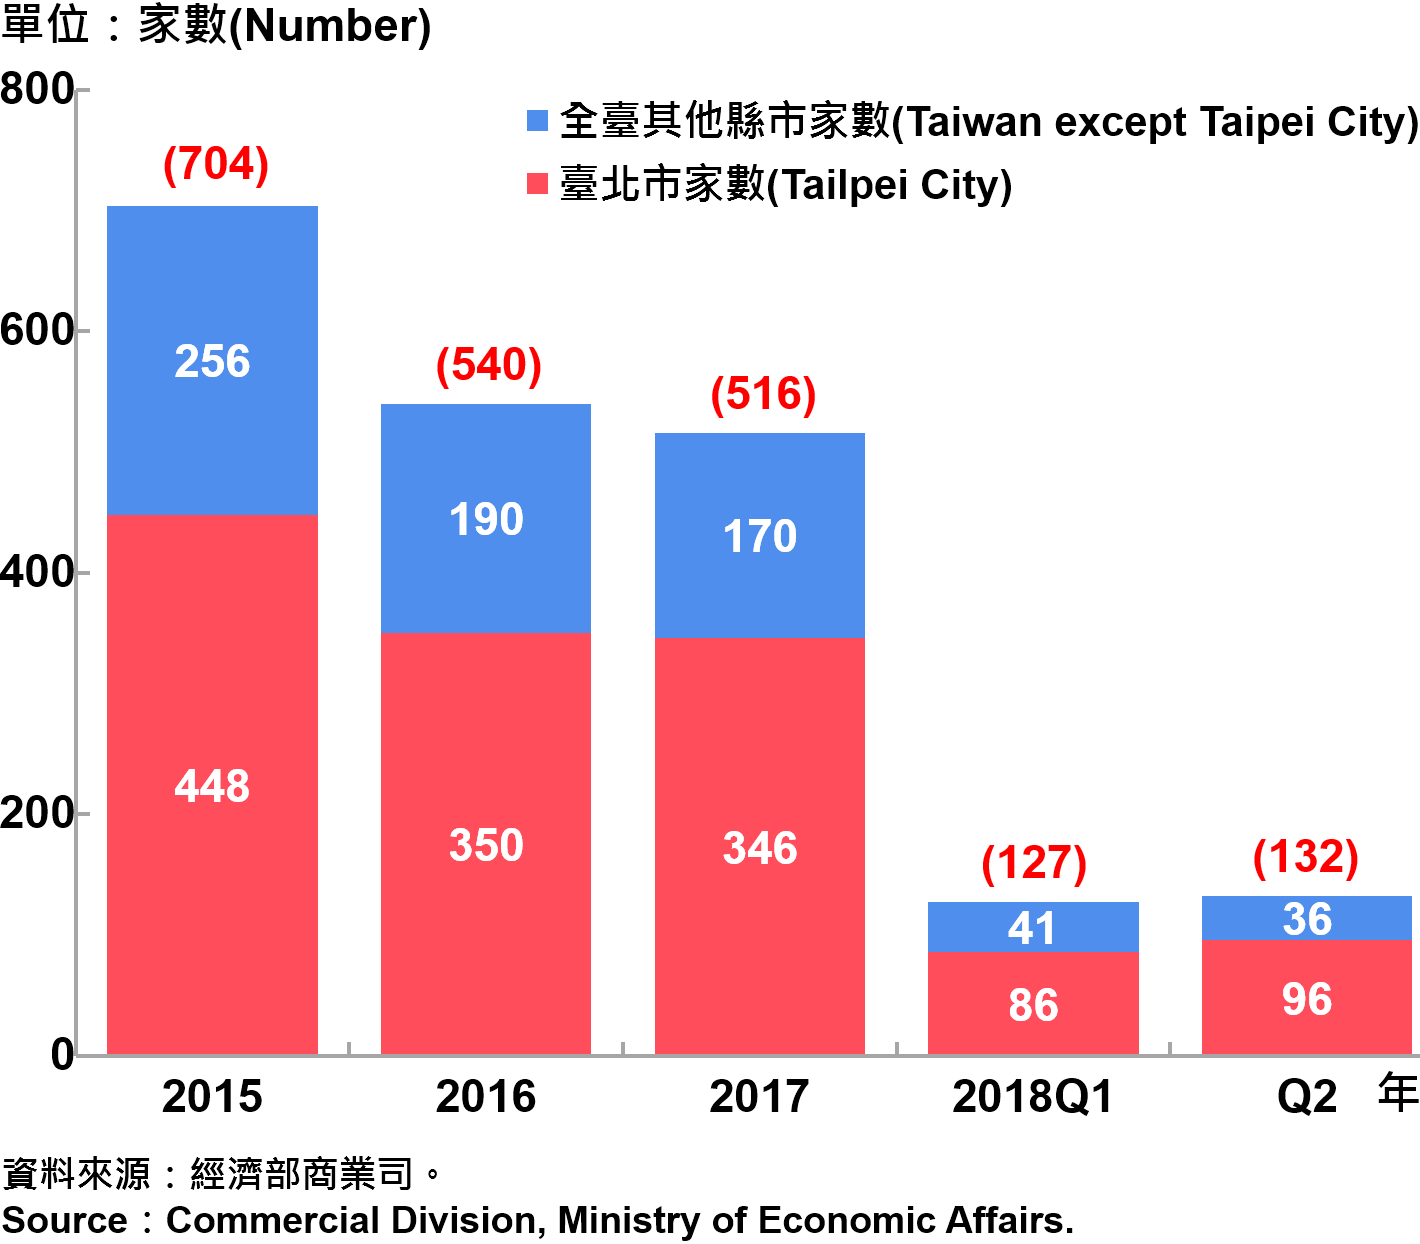 臺北市外商公司新設立家數—2018Q2 Number of Newly Established Foreign Companies in Taipei City—2018Q2